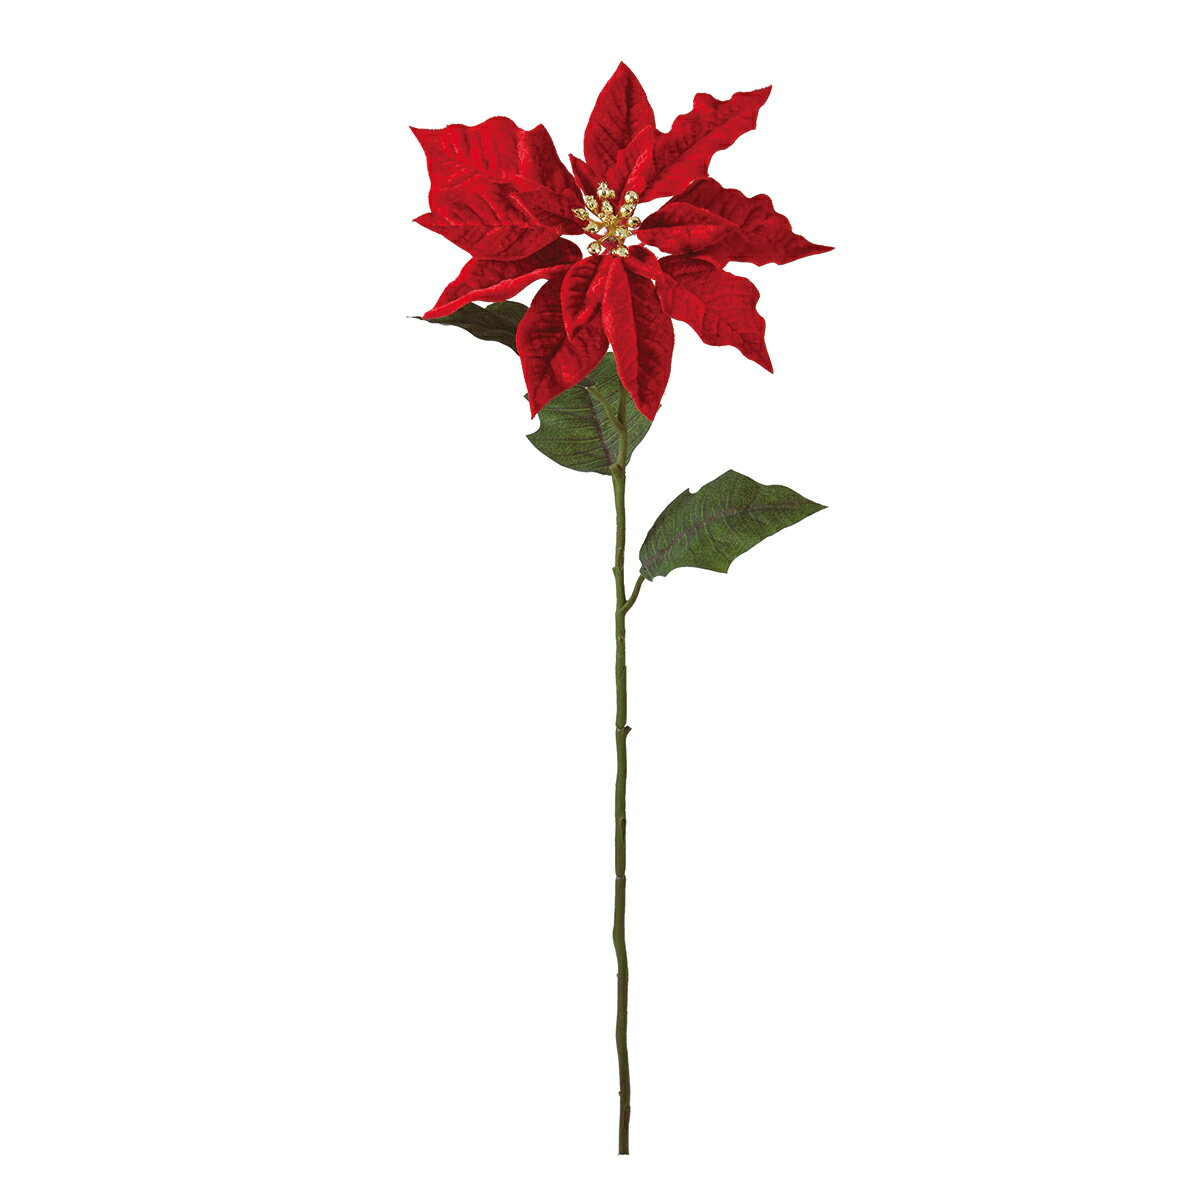 【サイズ】花径23〜30×L55×W55cm素材：ポリエステル◎生地/光沢ベルベット風、5輪付　Φ23×2　Φ27×2　Φ30×1・造花は人の手作業で作られており、一つ一つに生のお花同様の個体差があります。シワ・ほつれ等はリペアを施してご利用ください。・お花・実・葉は茎から取れる仕様になっているものが大半です。お届け時に取れてしまっている場合は付け戻してご利用下さい。【お取り寄せ商品について】※こちらはお取り寄せ商品となります。現在メーカーデータ上在庫のあるものを掲載させて頂いておりますがメーカー実在庫の欠品等によりご注文いただいた後に欠品が発生する場合がございます。その場合にはメールにてご案内をさせて頂きます。4967116069184/20160815new/t17xmgl/17awiso/t19awxm3/20ax-100造花（アーティフィシャルフラワー） 造花 花材「は行」 ポインセチア/クリスマス